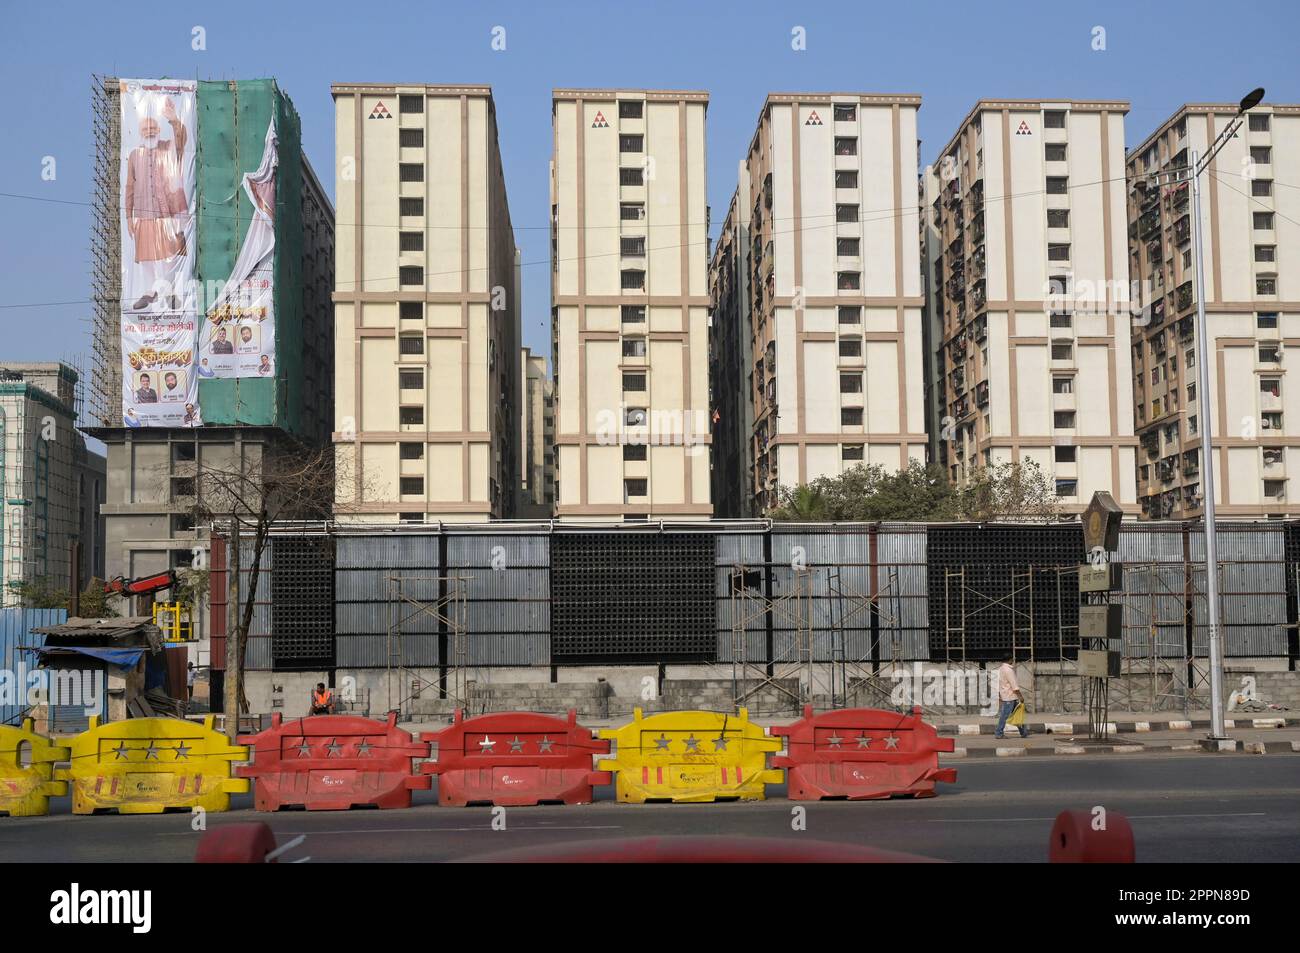 INDIA, Mumbai, zona residenziale lungo l'autostrada occidentale, blocchi di appartamenti, grande cartellone con il primo ministro indiano, Narendra modi Foto Stock